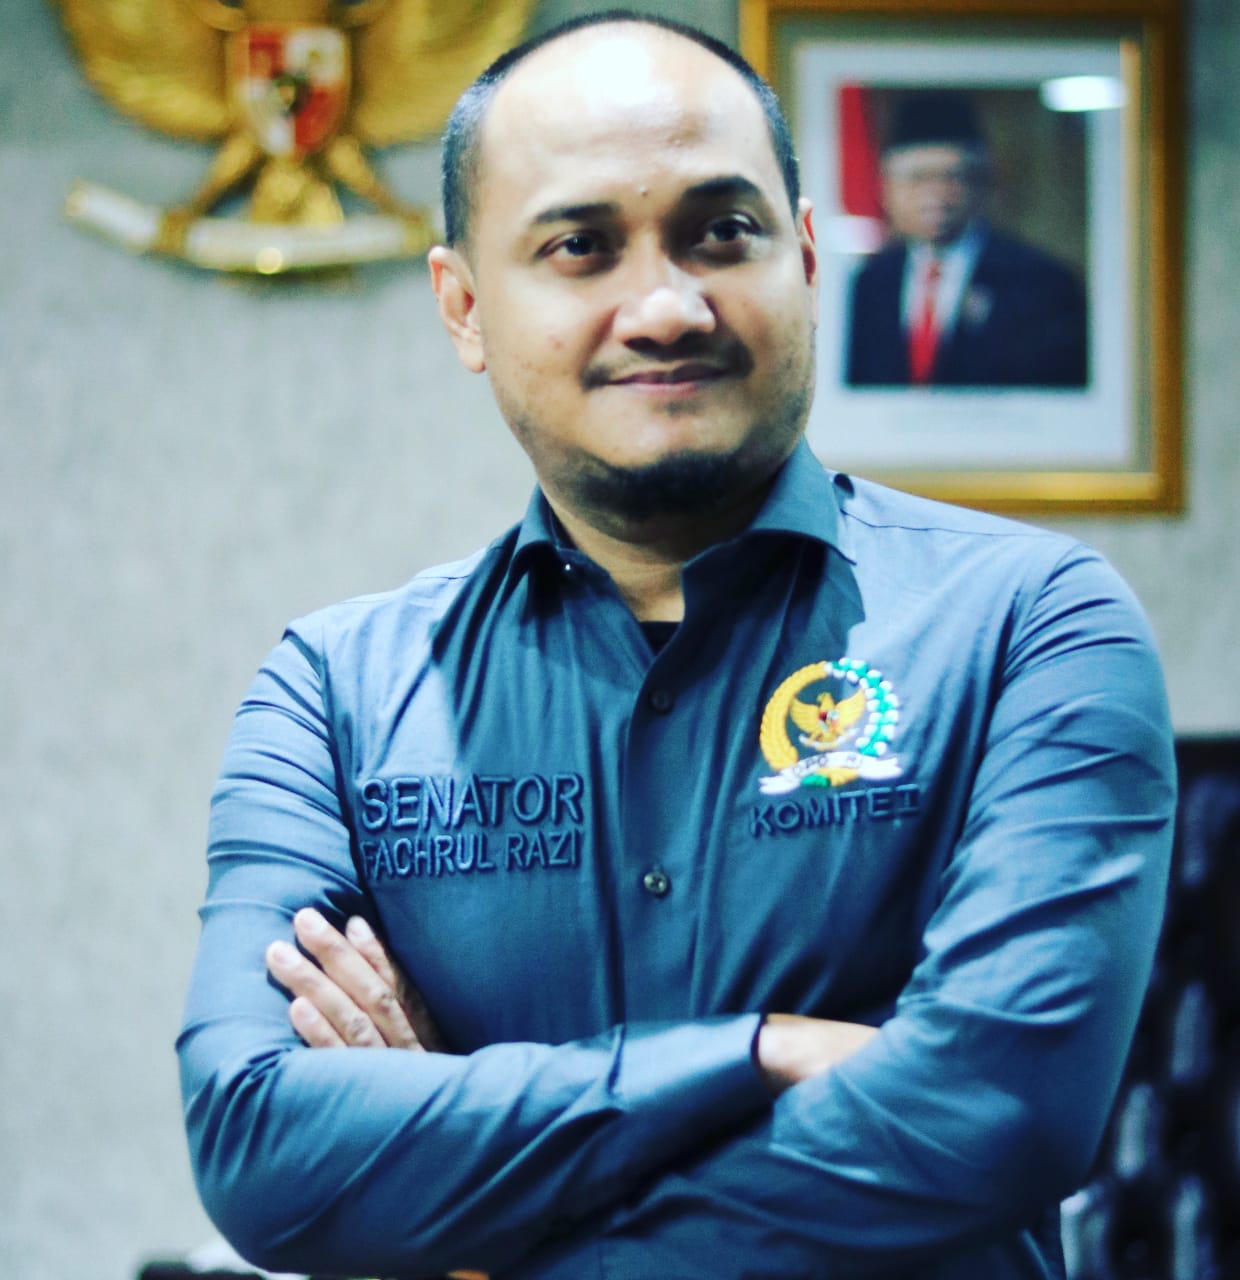 Ketua komite I Fachrul Razi mengapresiasi kinerja KPK tahun 2020